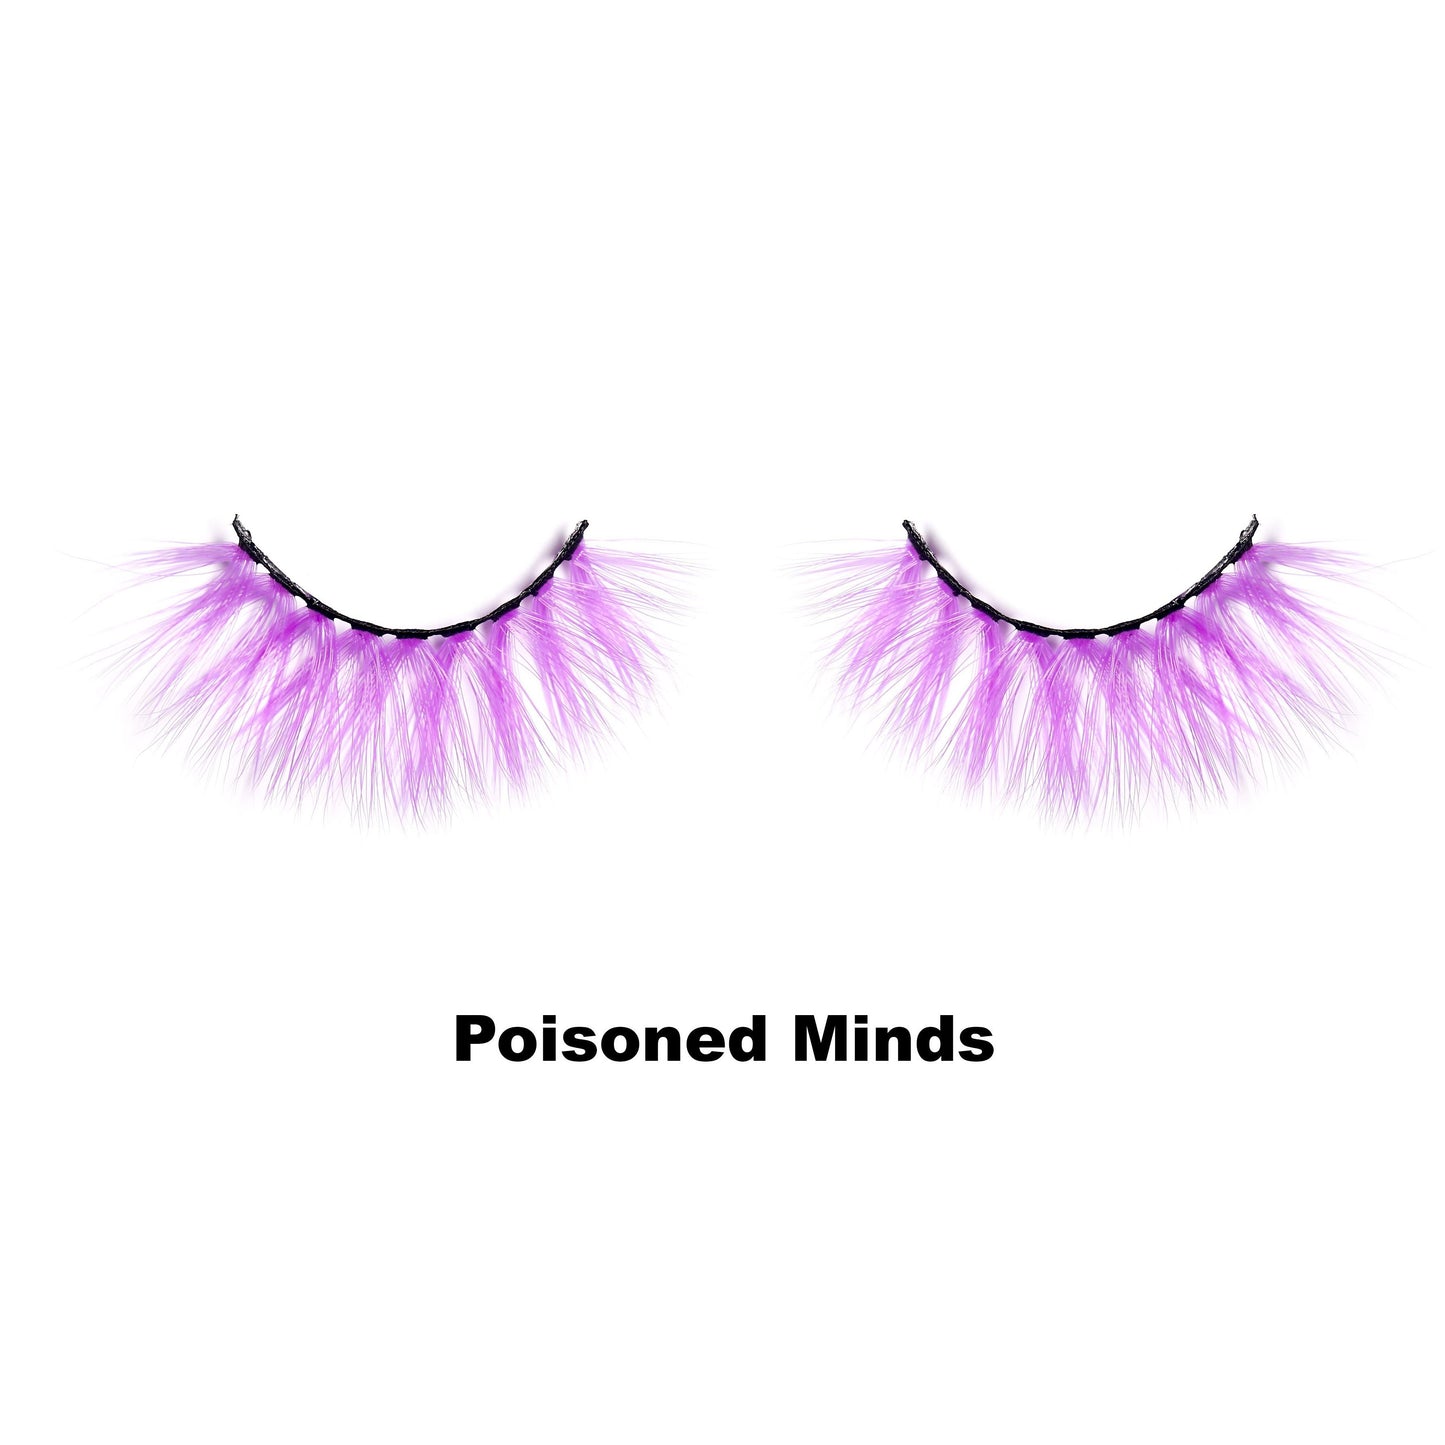 "Poisoned Minds" Lashes